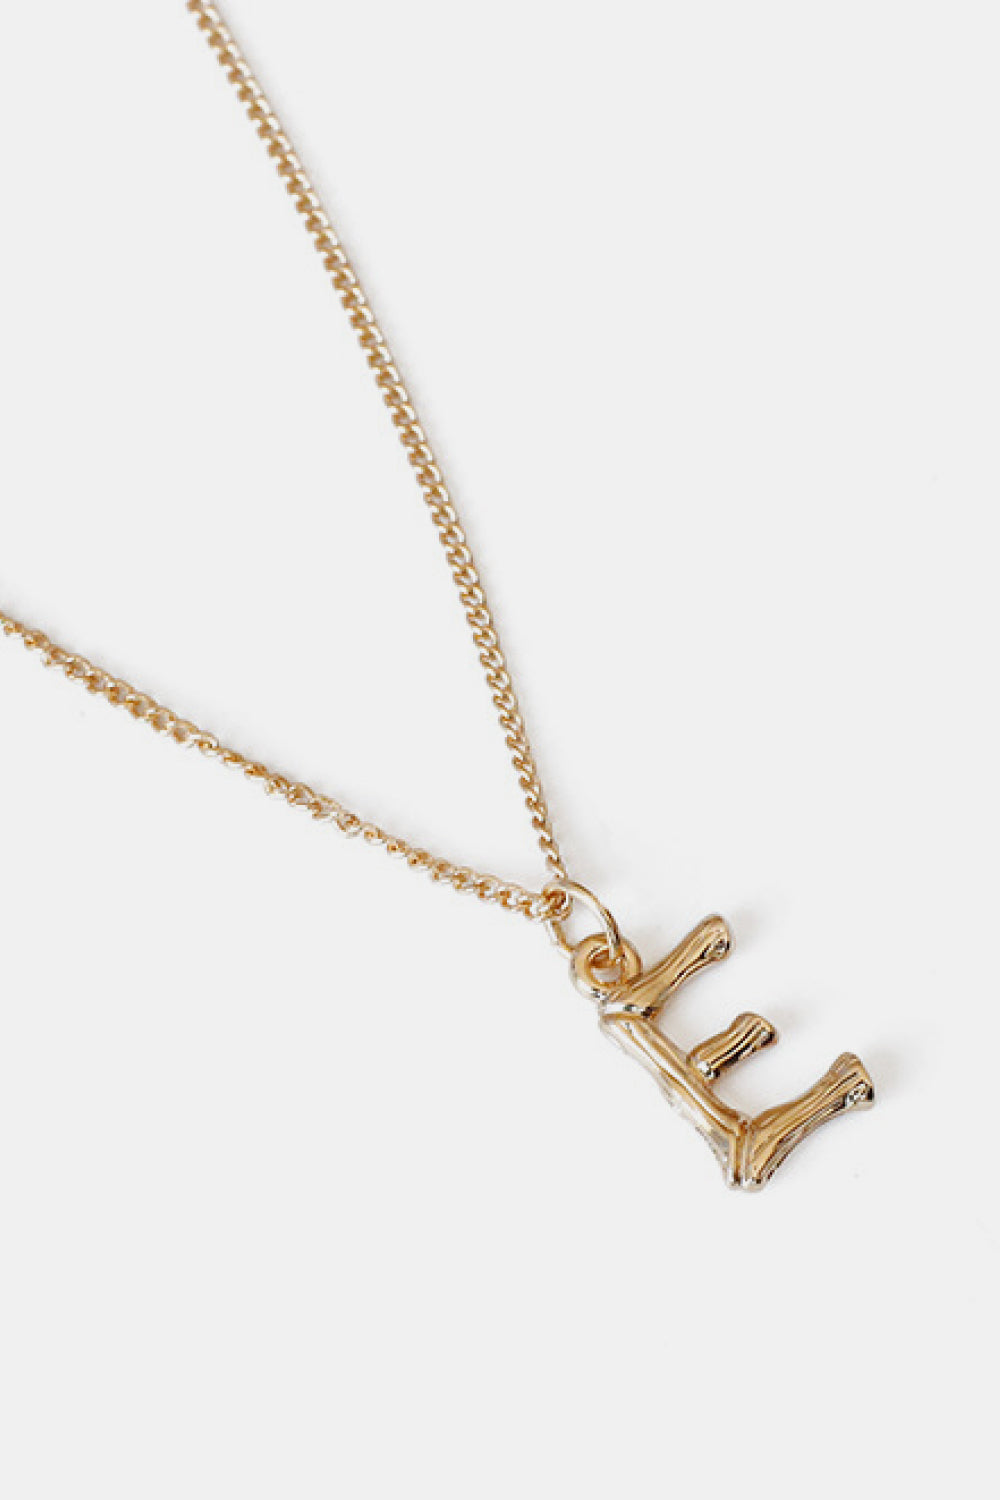 A-M Letter Pendant Necklace